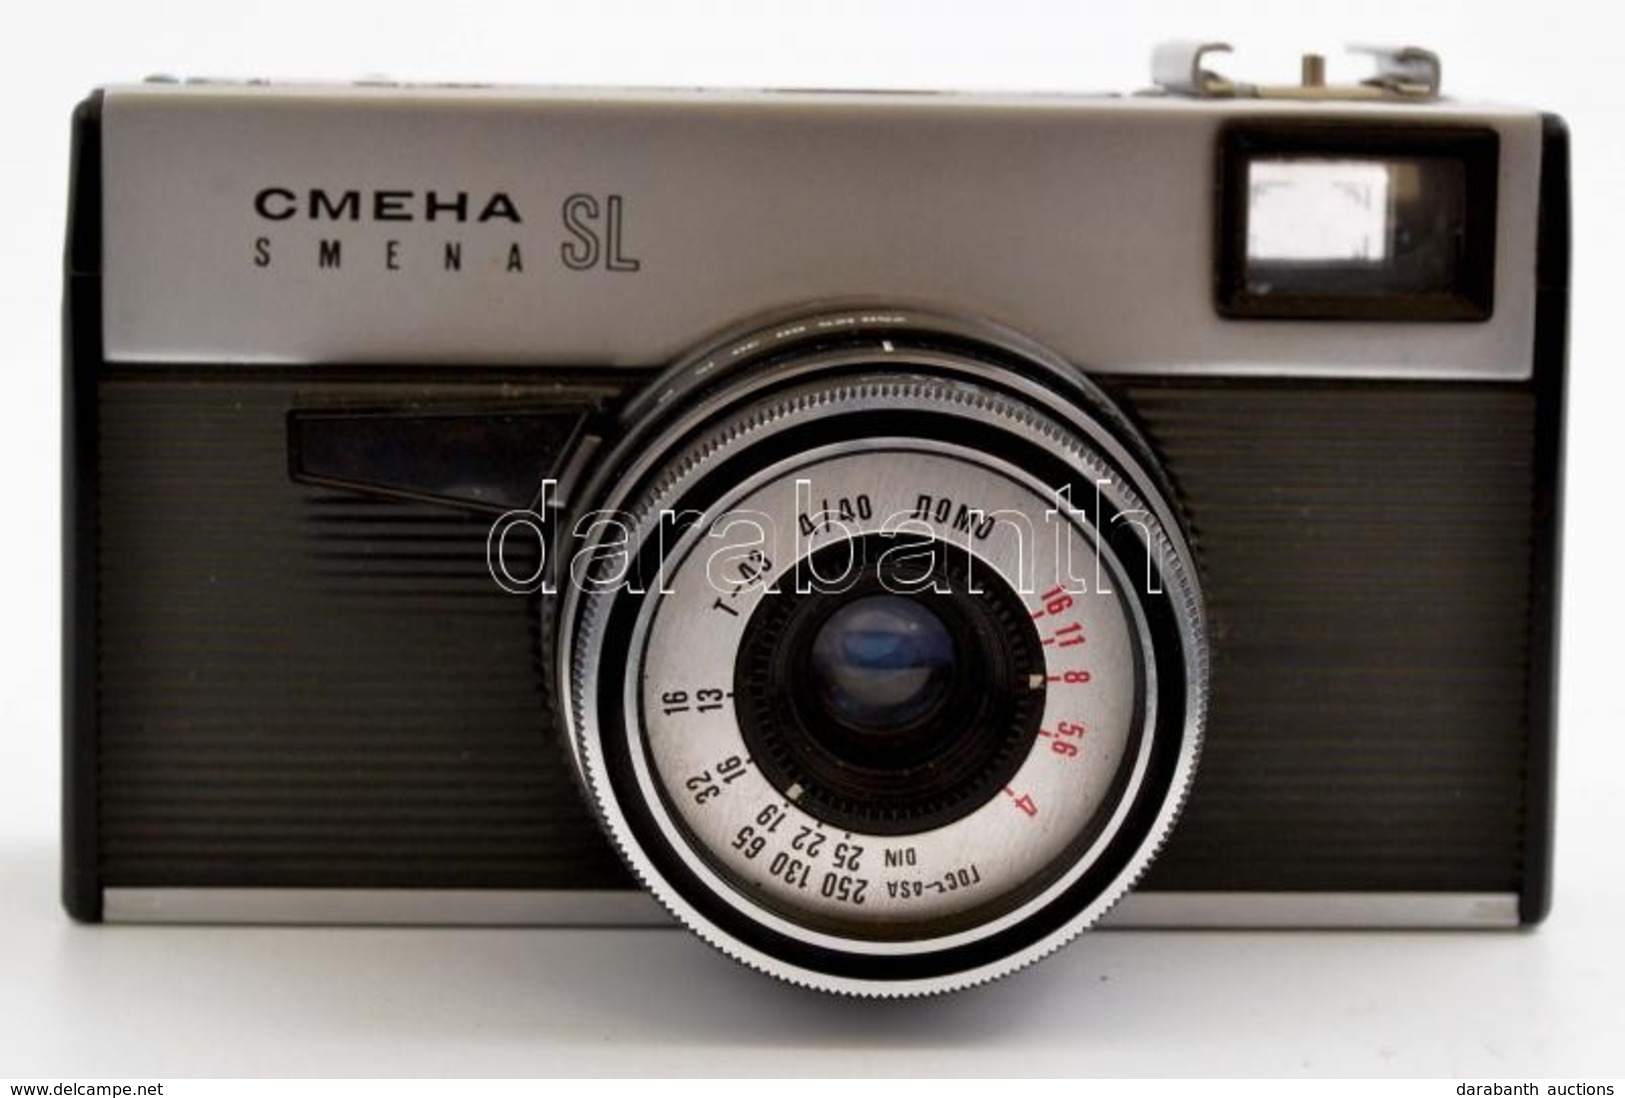 Smena SL Fényképezőgép Lomo T-43 4/40 Objektívvel, Leírással, Saját Tokjával, Jó állapotban - Fototoestellen